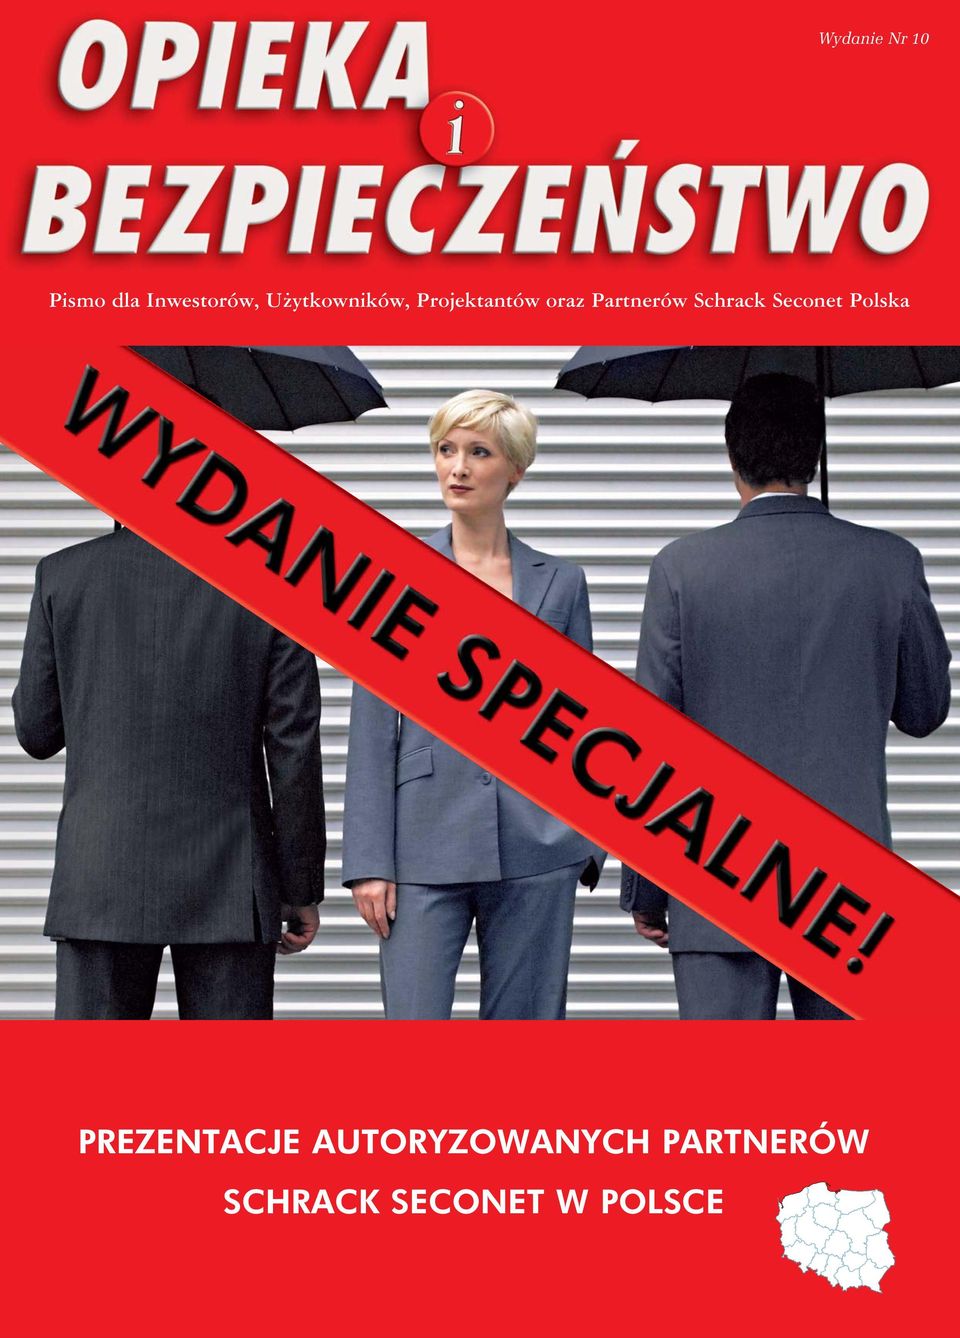 Partnerów Schrack Seconet Polska